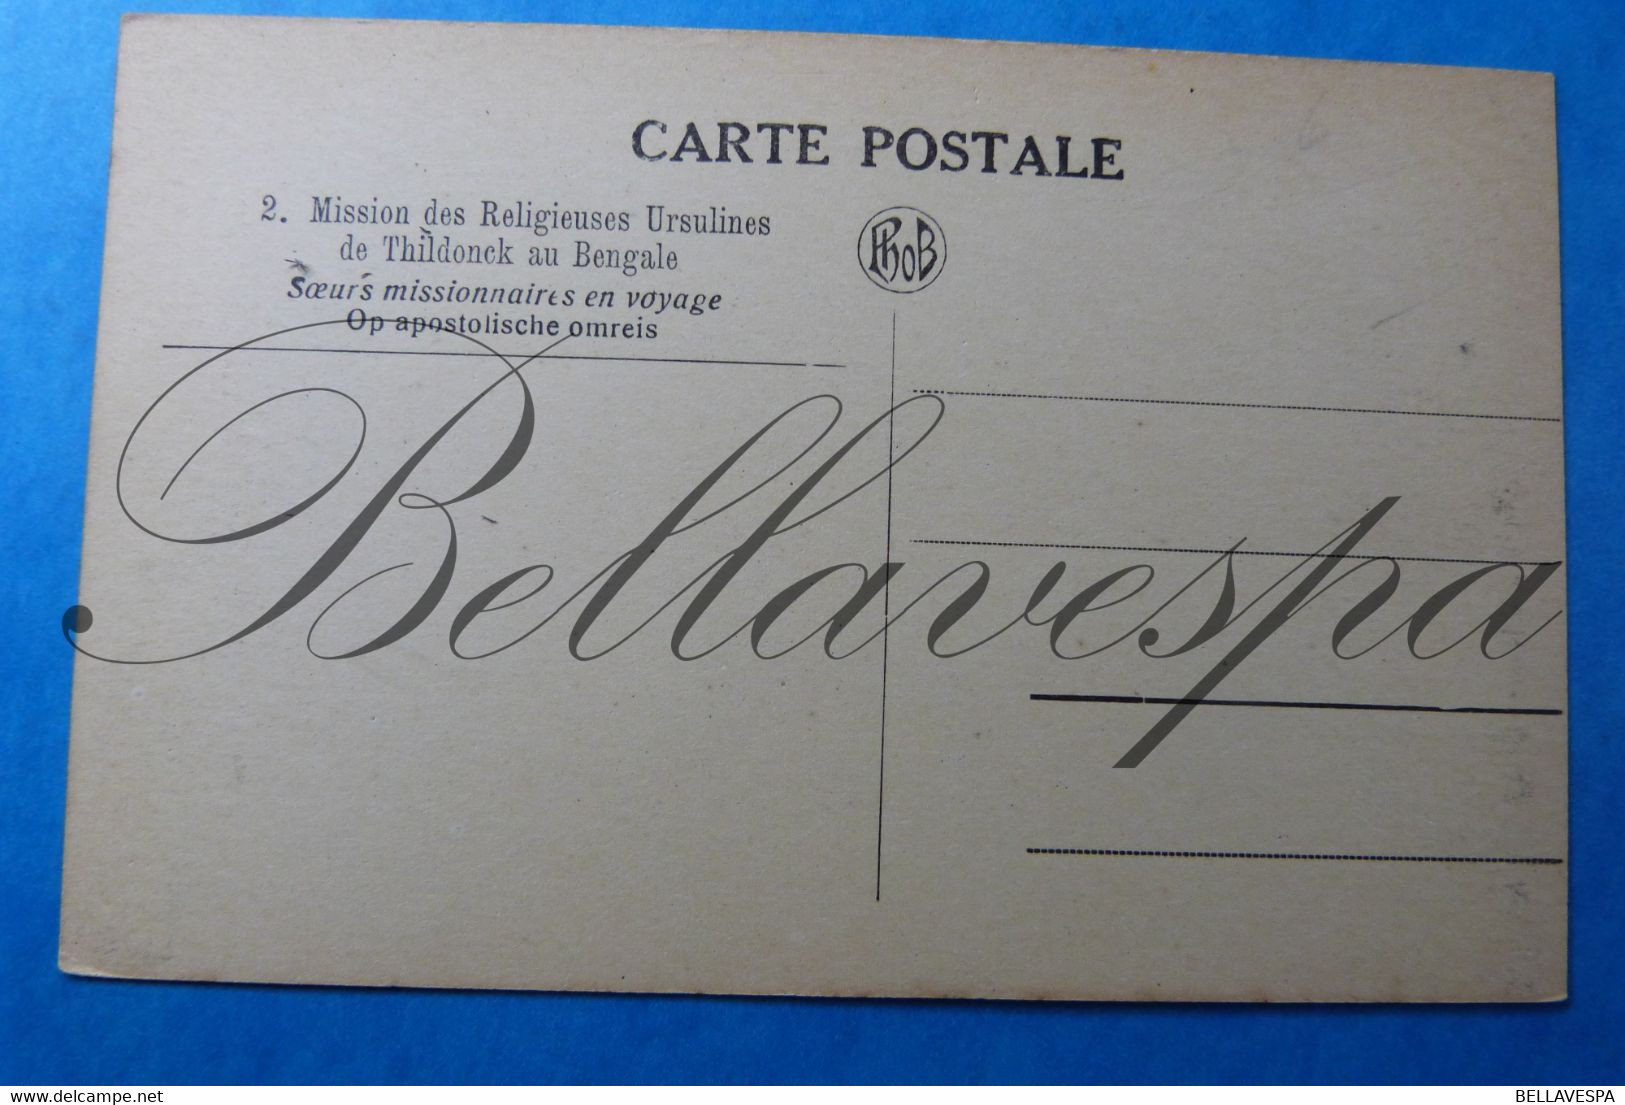 Belgische Katholieke Missie kaarten Mission Lot x 13 stuks